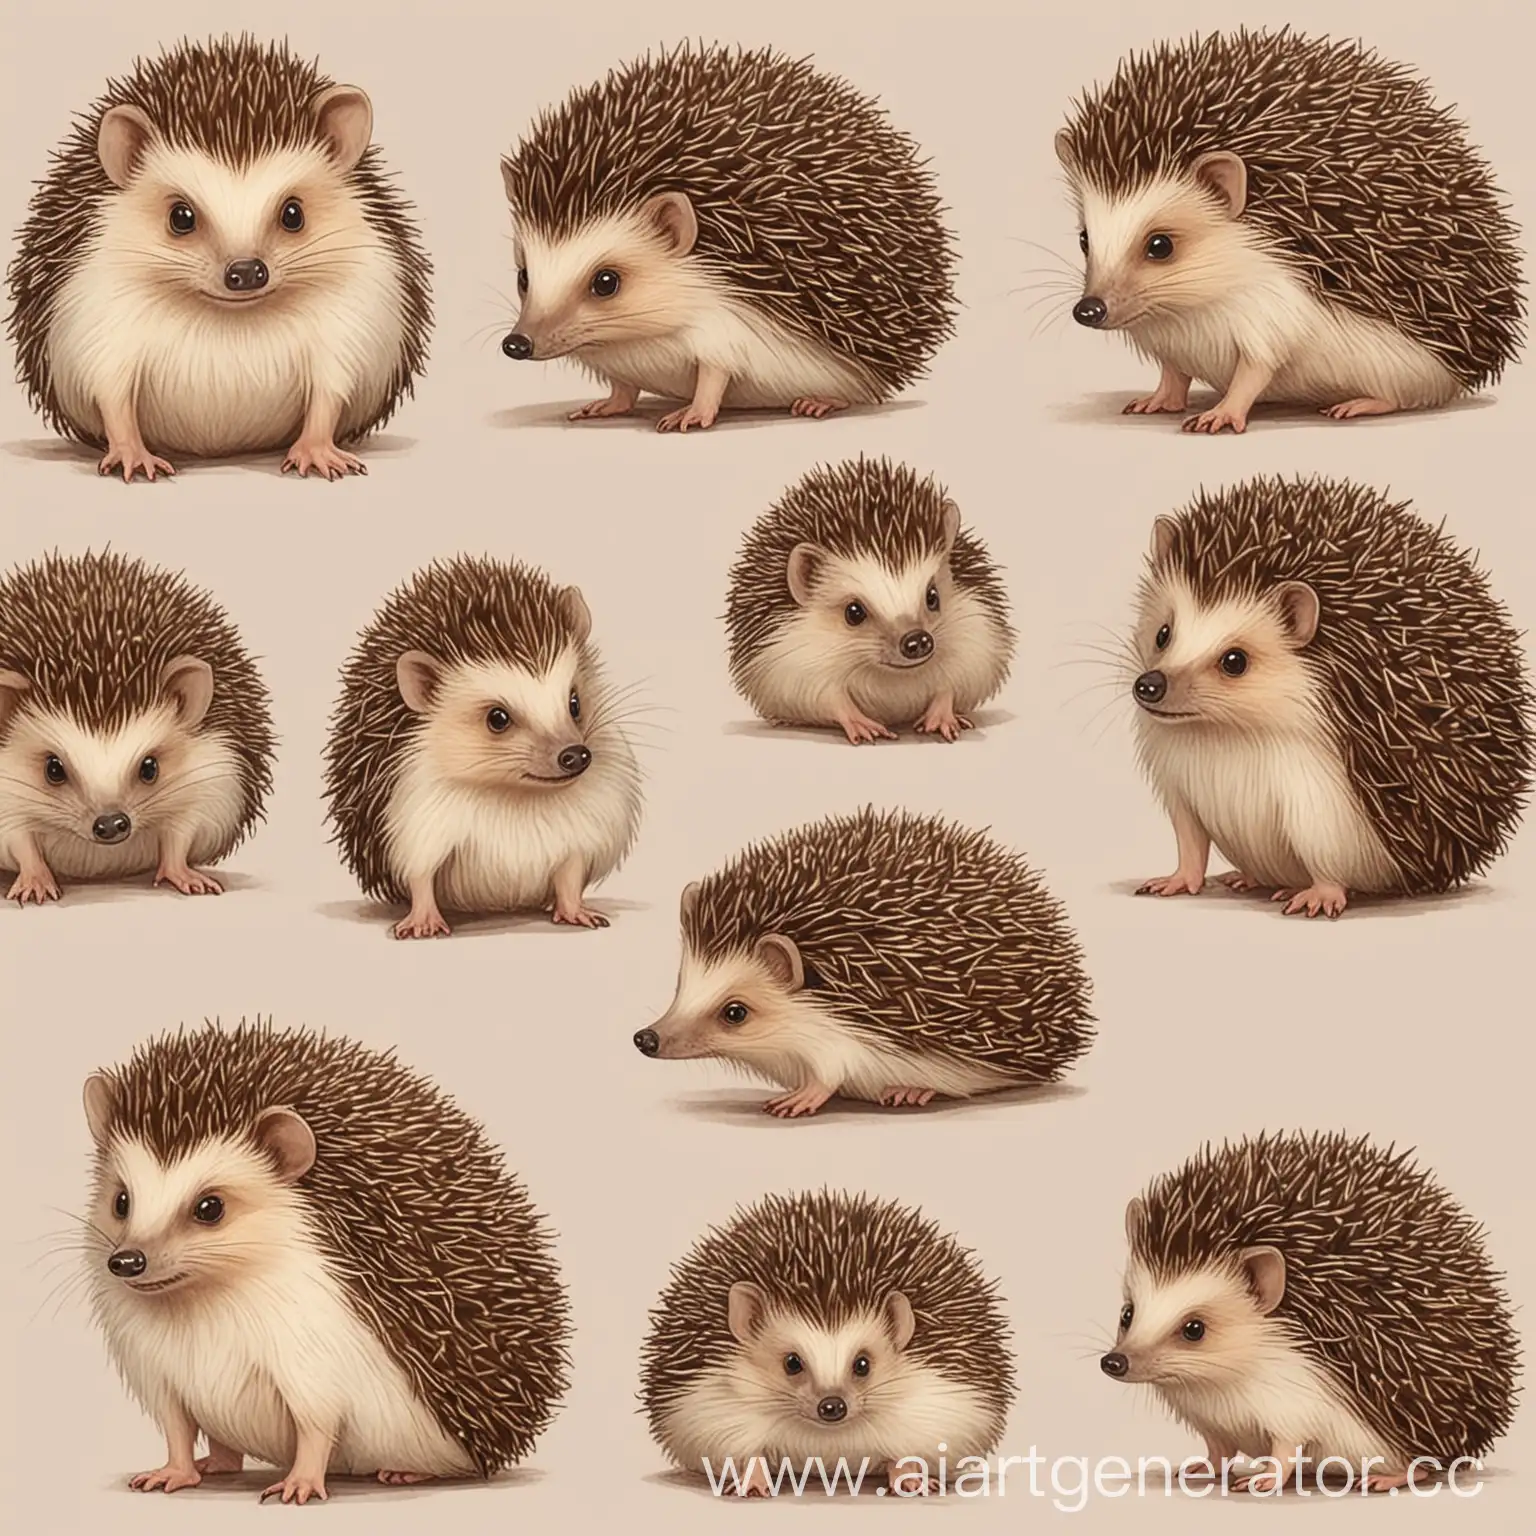 Adorable-Hedgehog-Poses-Expressive-Drawings-of-Hedgehogs-in-Various-Gestures